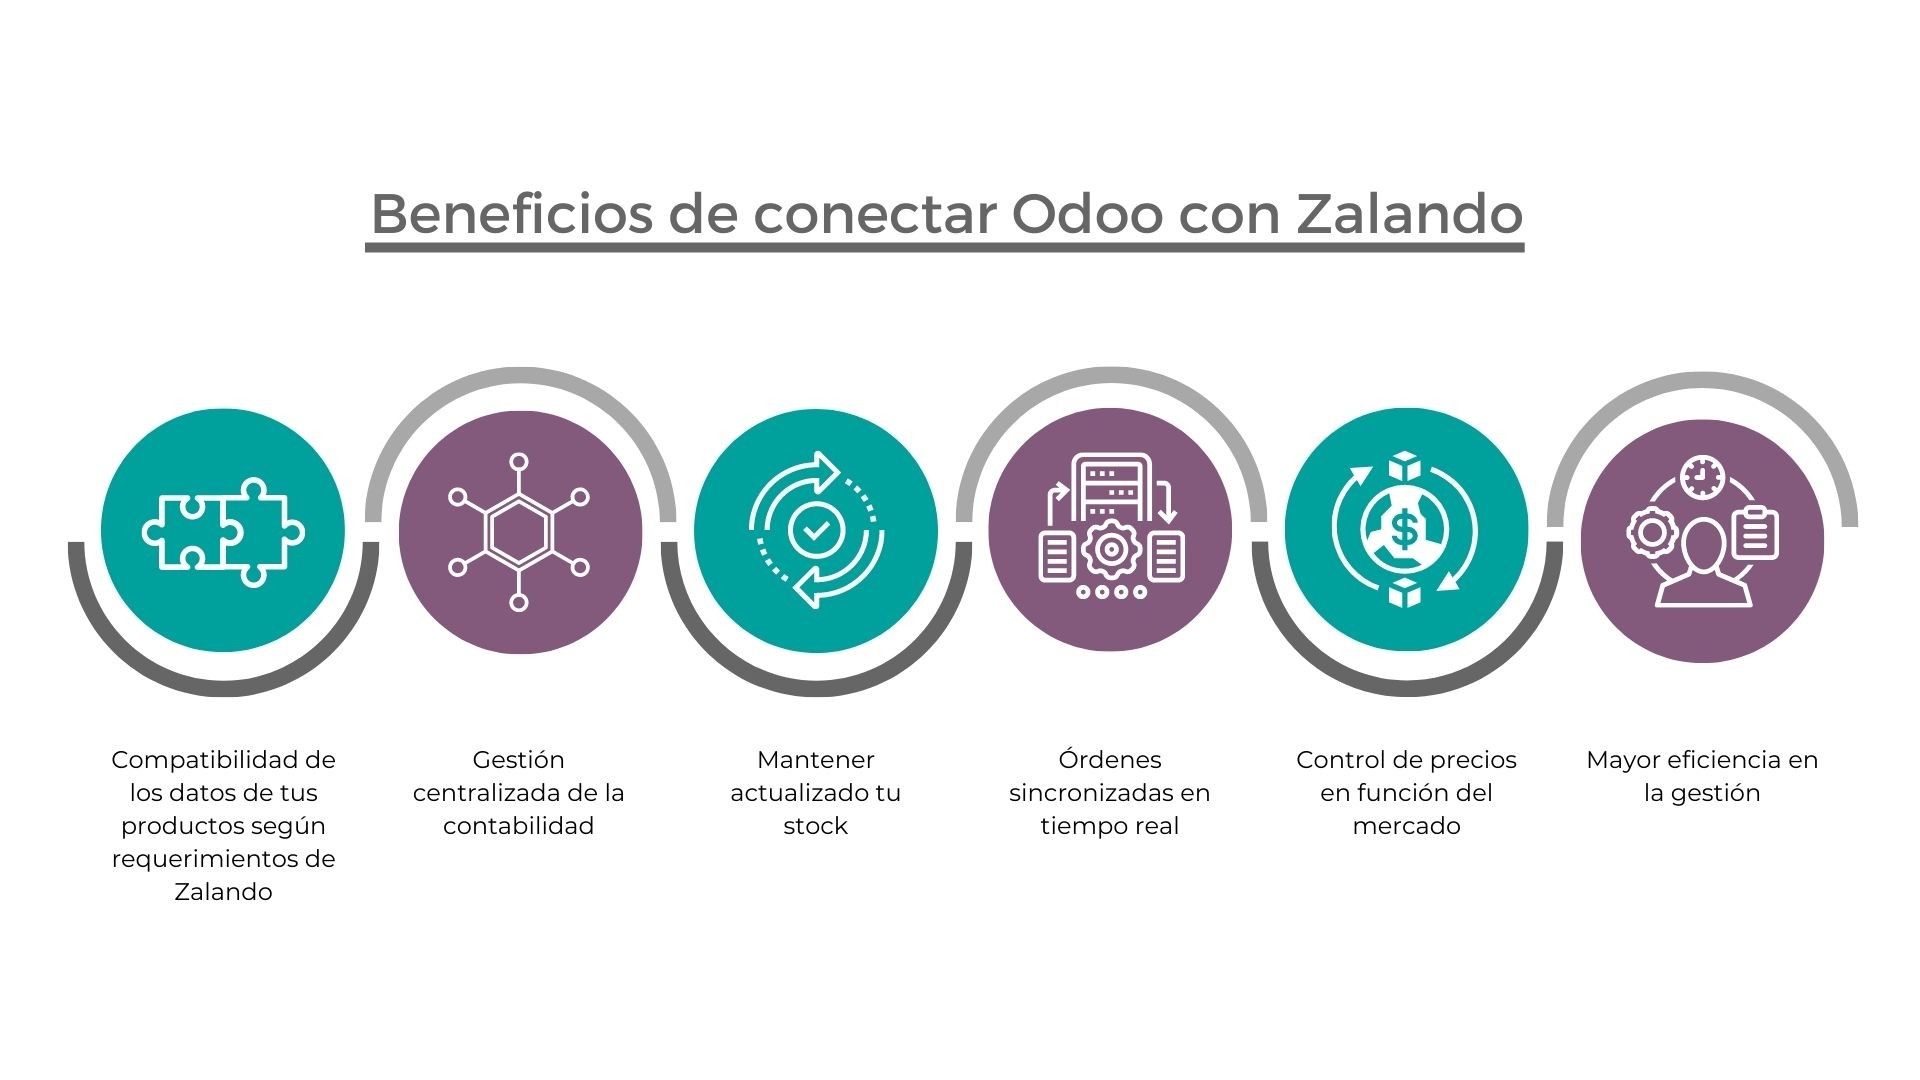 Beneficios de conectar Odoo con Zalando